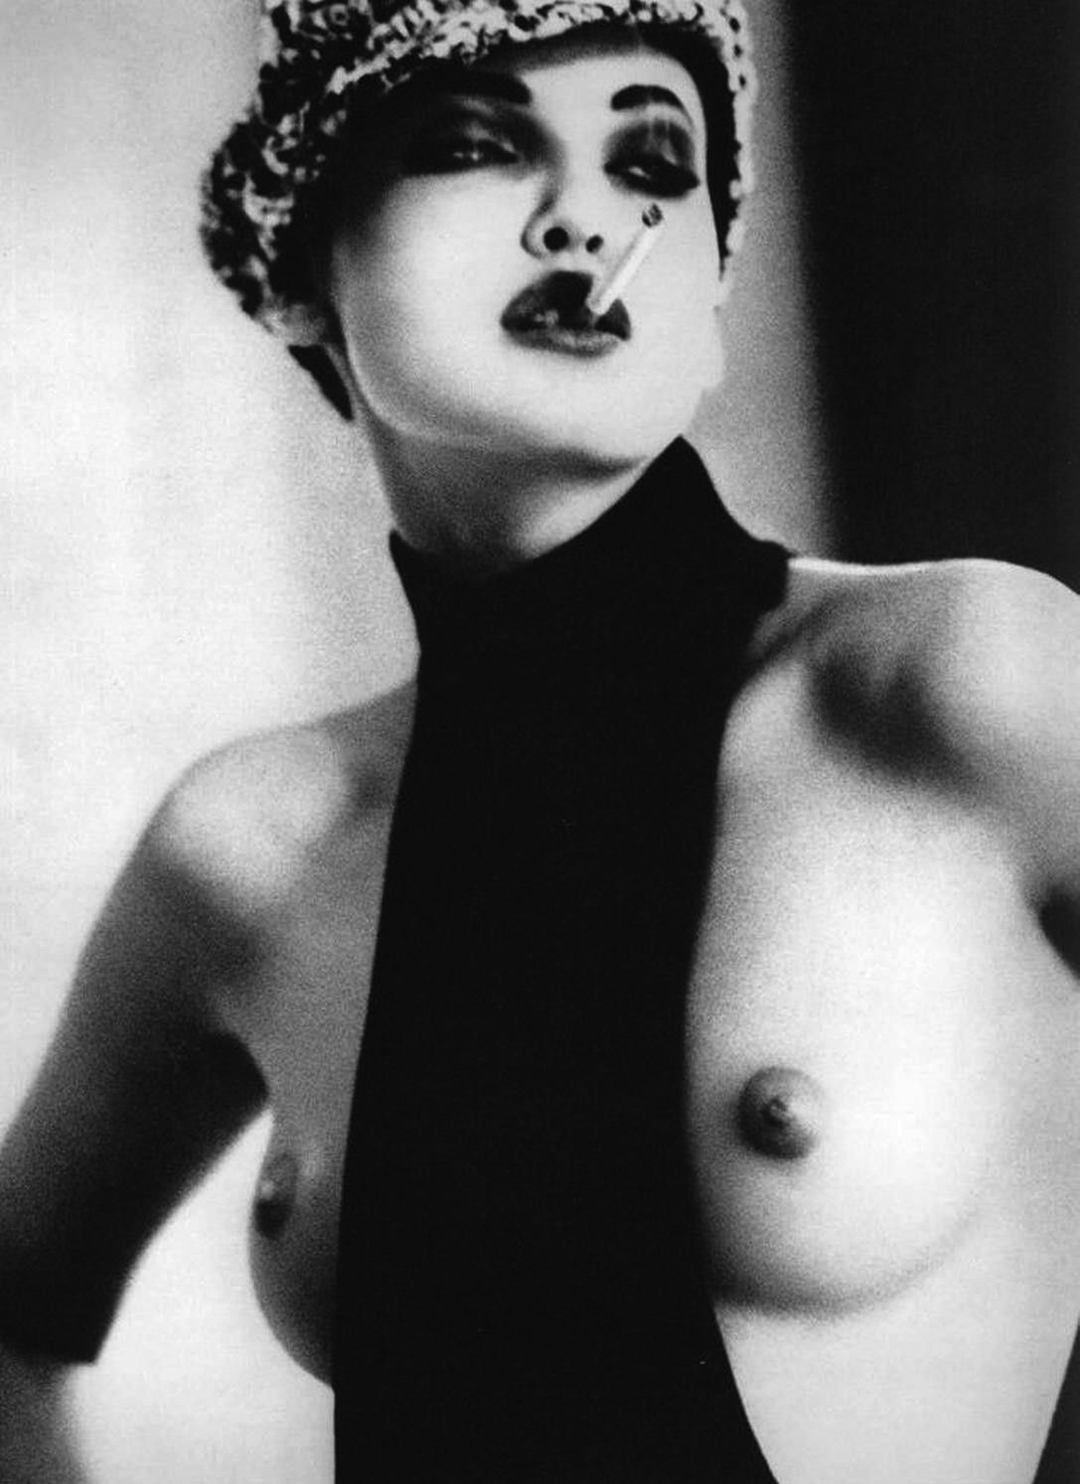 Nadja Auermann by Ellen von Unwerth for Vogue UK October 1991.